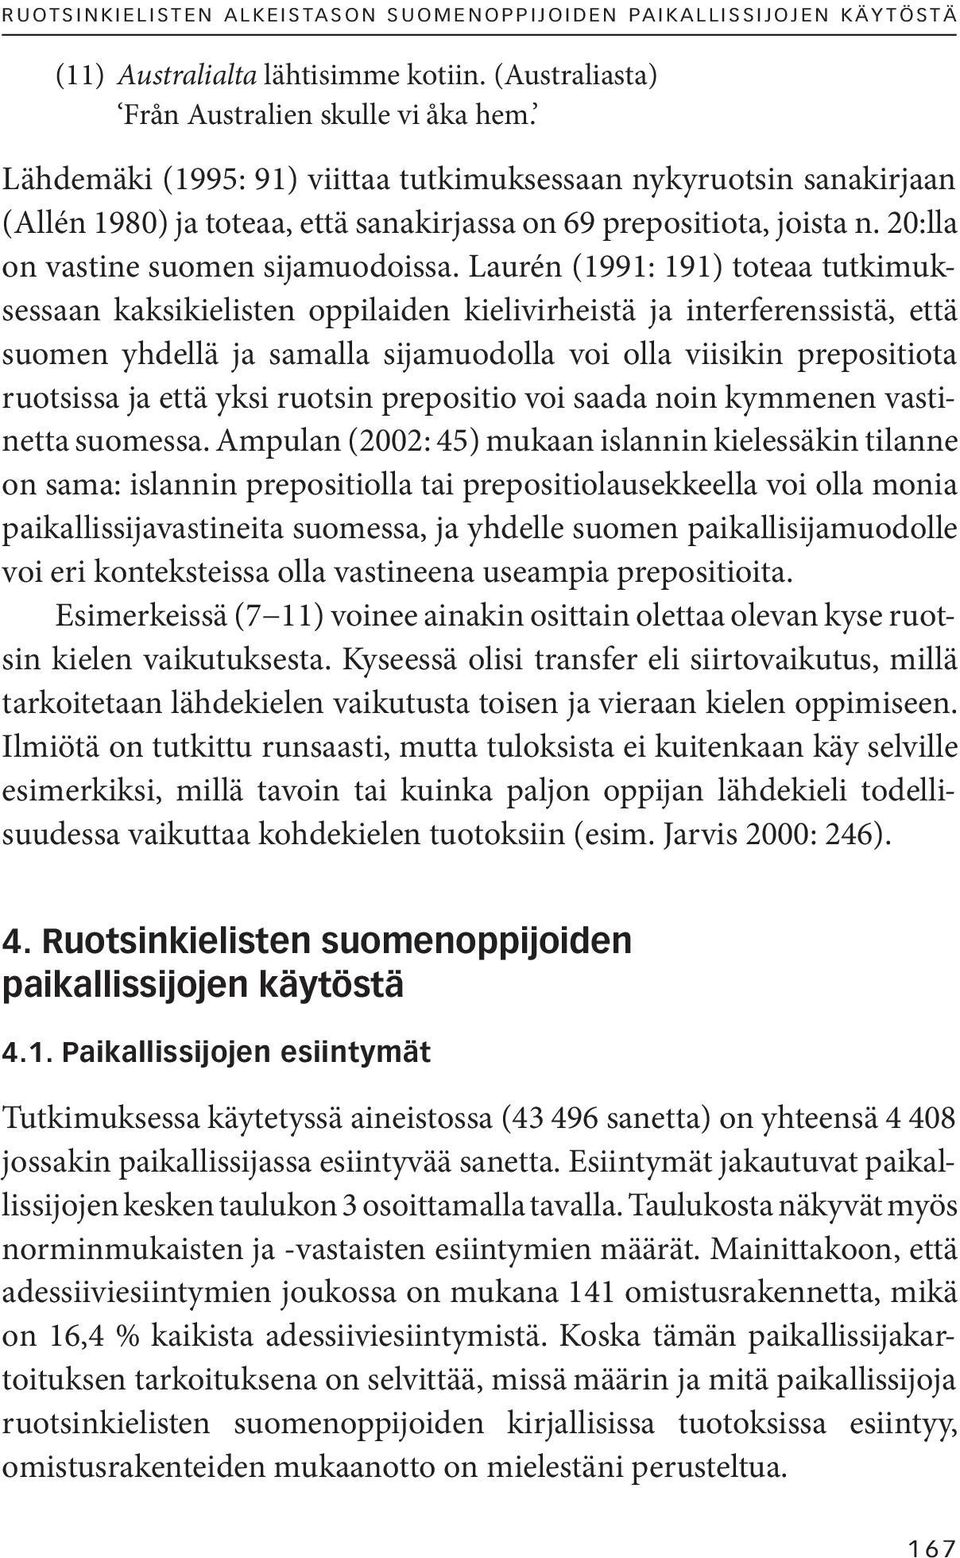 Laurén (1991: 191) toteaa tutkimuksessaan kaksikielisten oppilaiden kielivirheistä ja interferenssistä, että suomen yhdellä ja samalla sijamuodolla voi olla viisikin prepositiota ruotsissa ja että